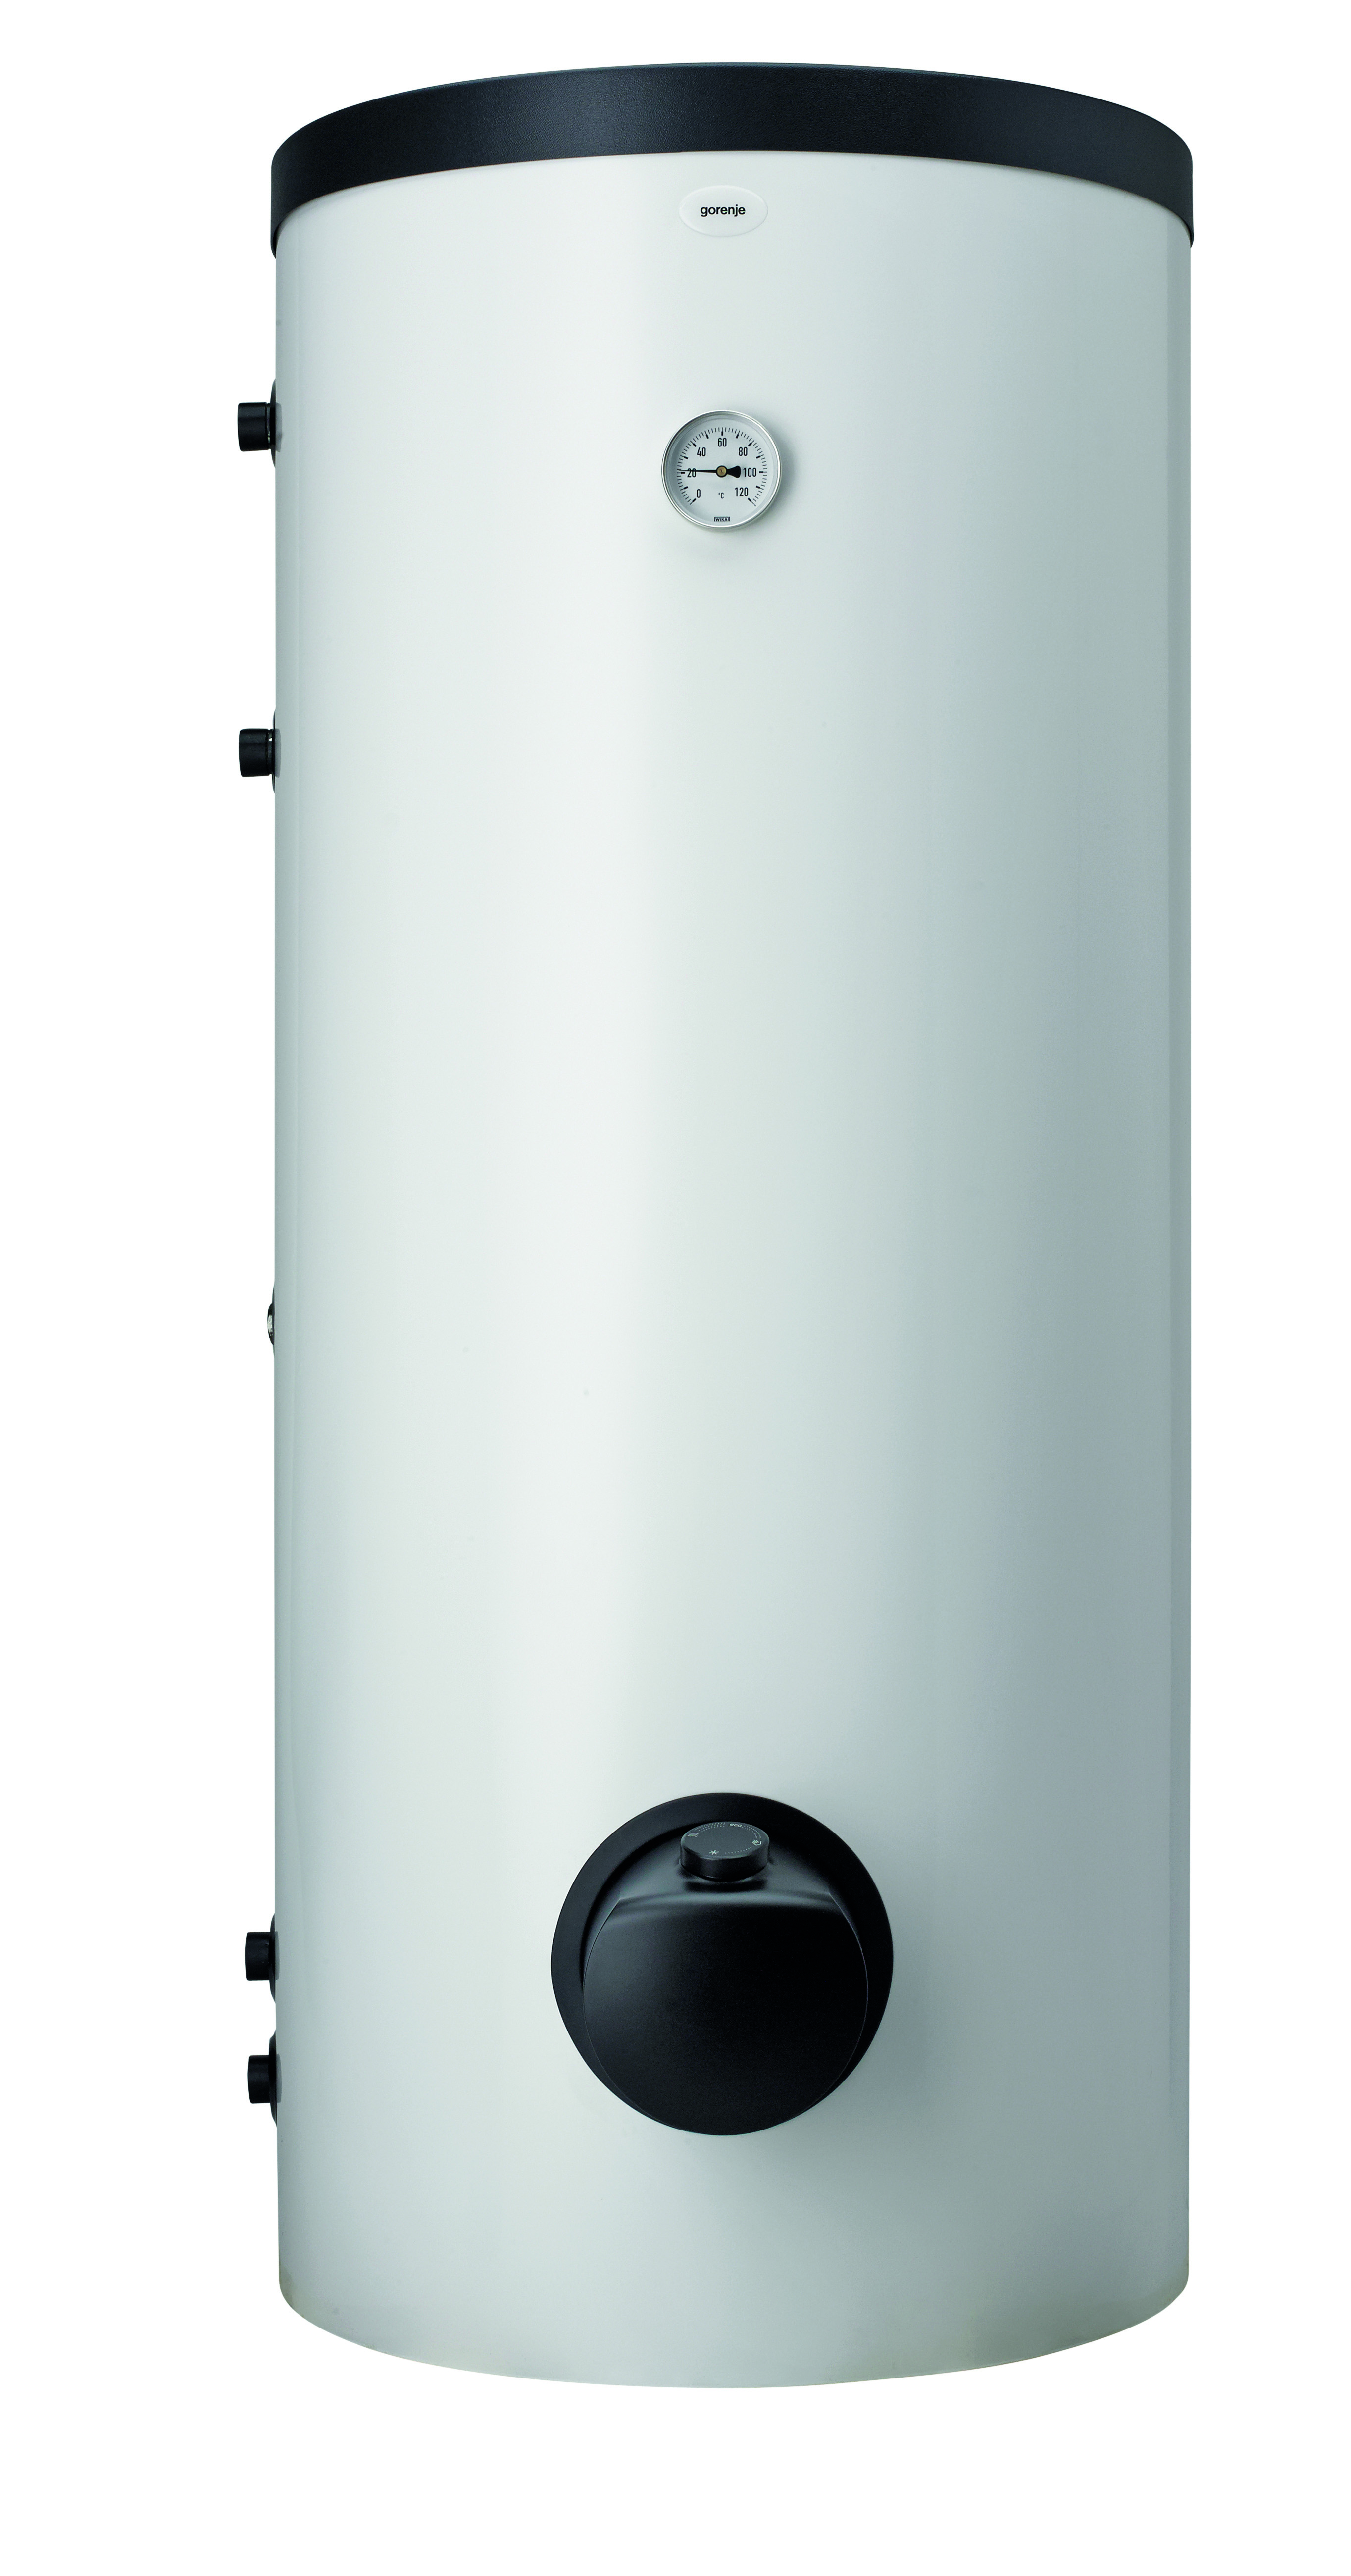 Комбинированный водонагреватель Gorenje VLG200A1-1G3 в интернет-магазине, главное фото